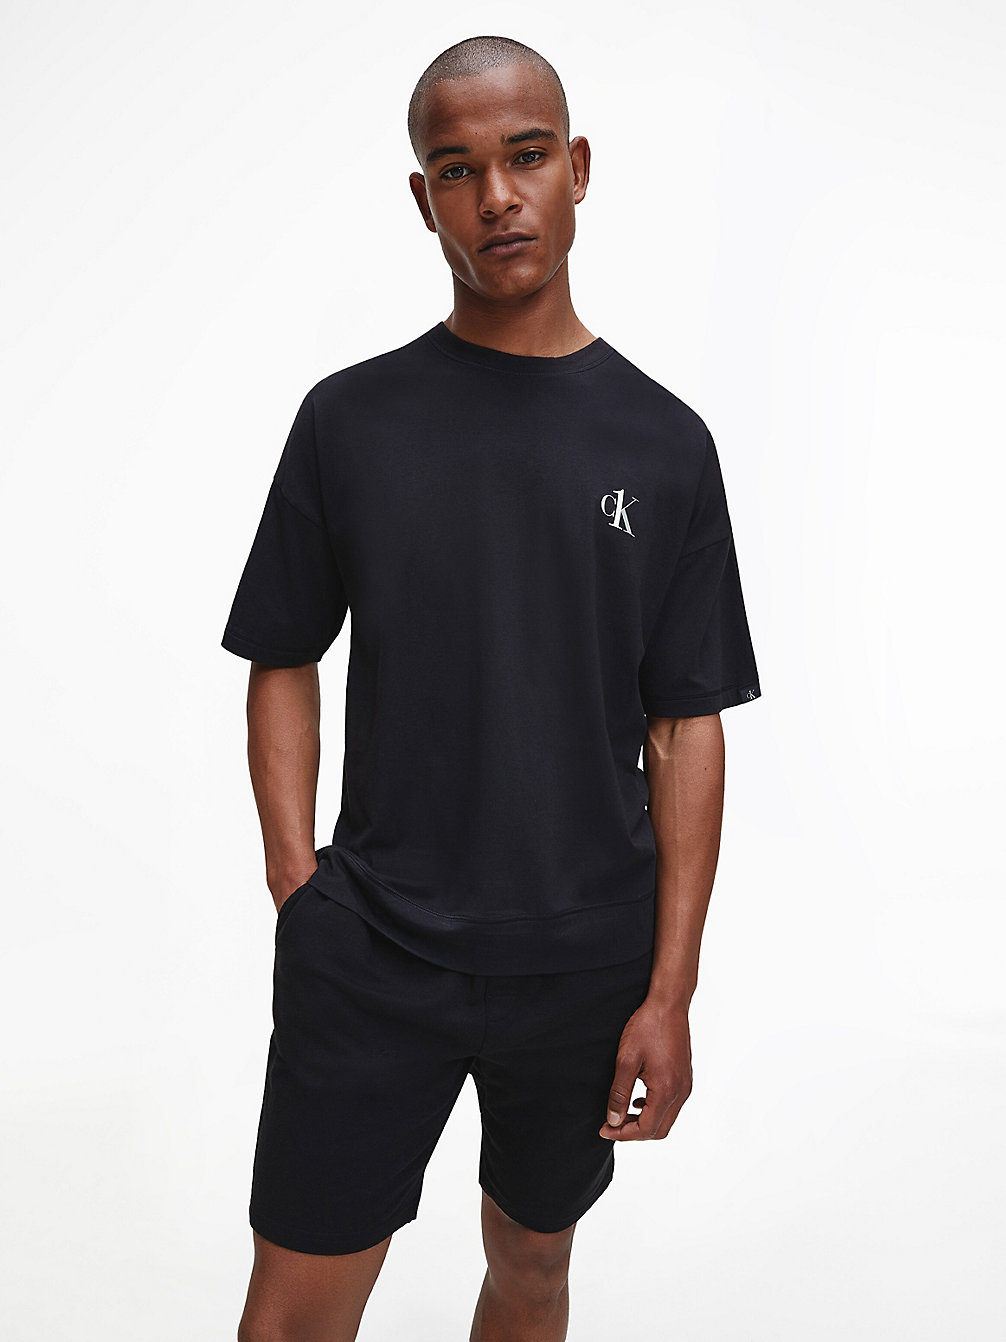 BLACK > T-Shirt Po Domu - CK One > undefined Mężczyźni - Calvin Klein